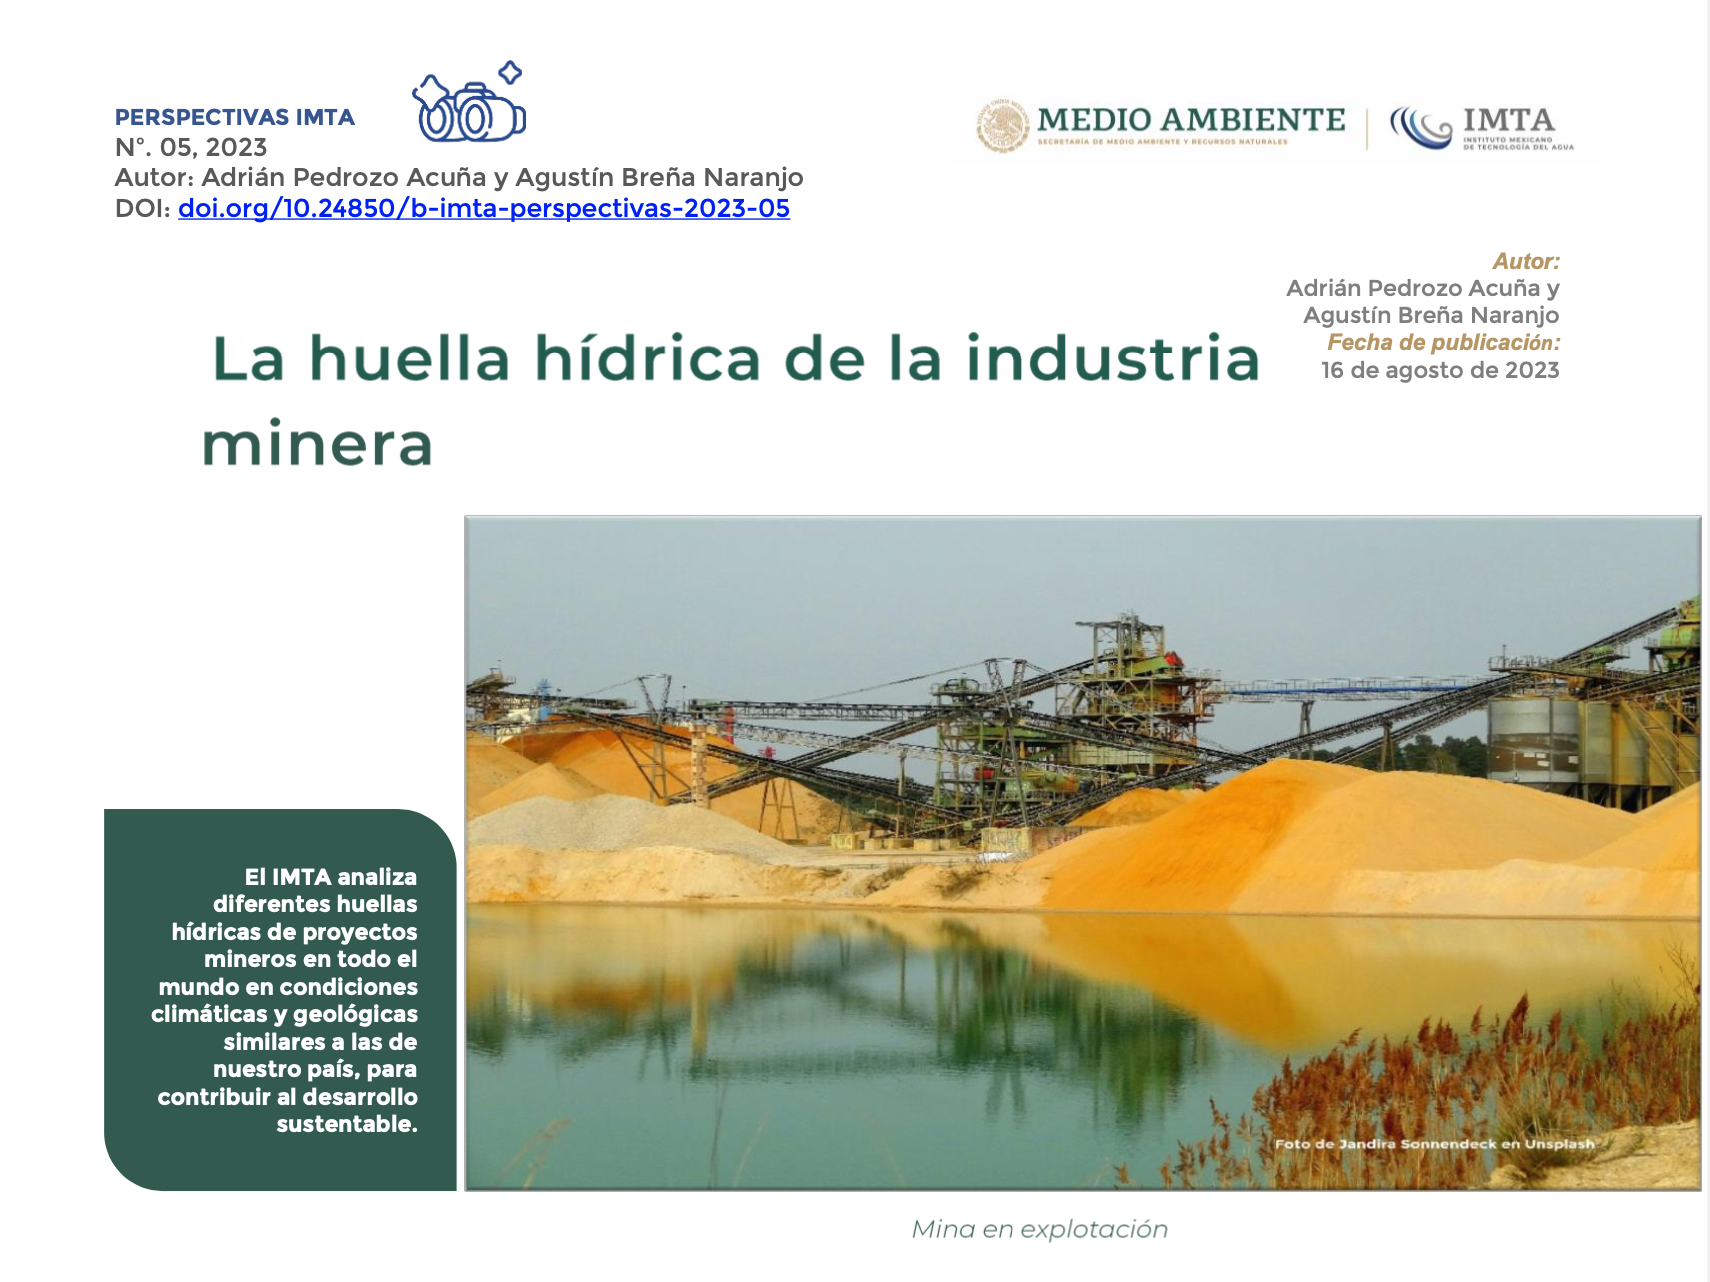 La huella hídrica de la industria minera (IMTA Y MEDIO AMBIENTE)